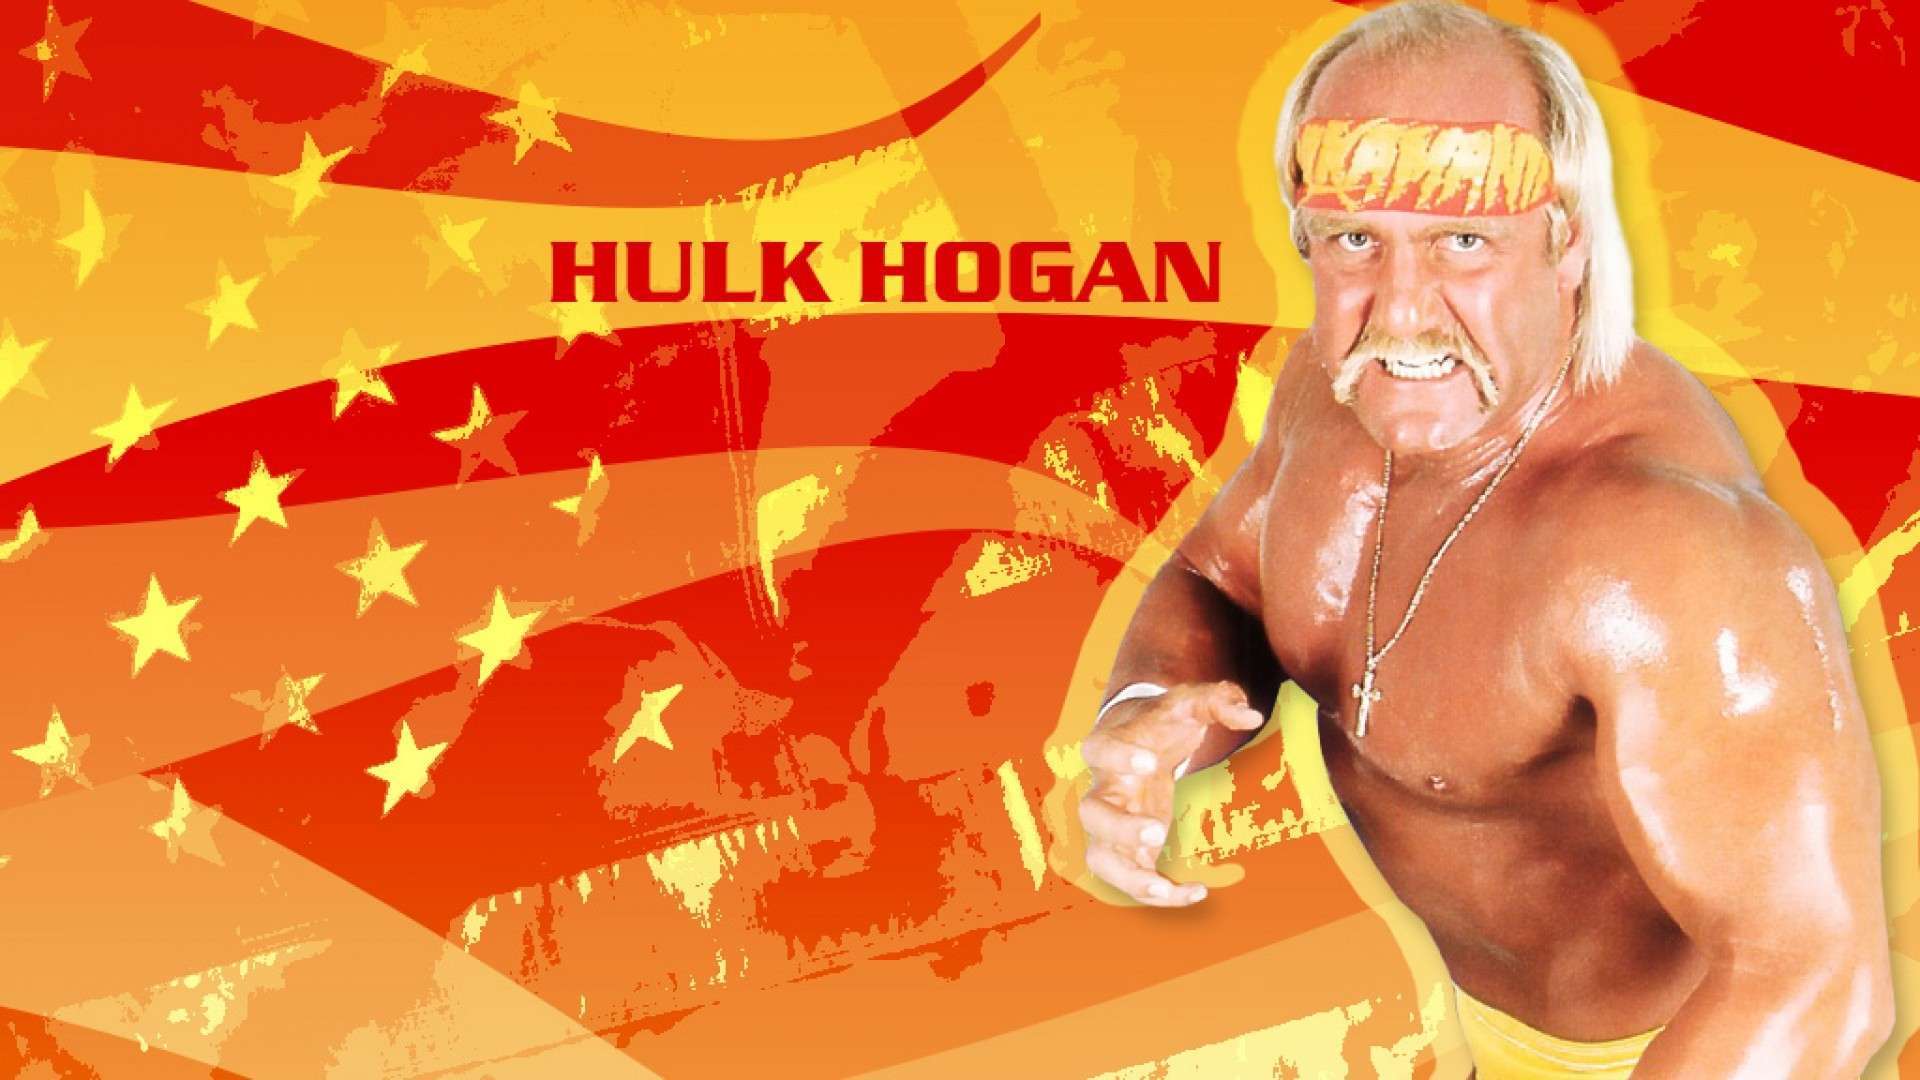 Hulk Hogan Wallpaper 1080p, Free Download, Borrow, And Streaming